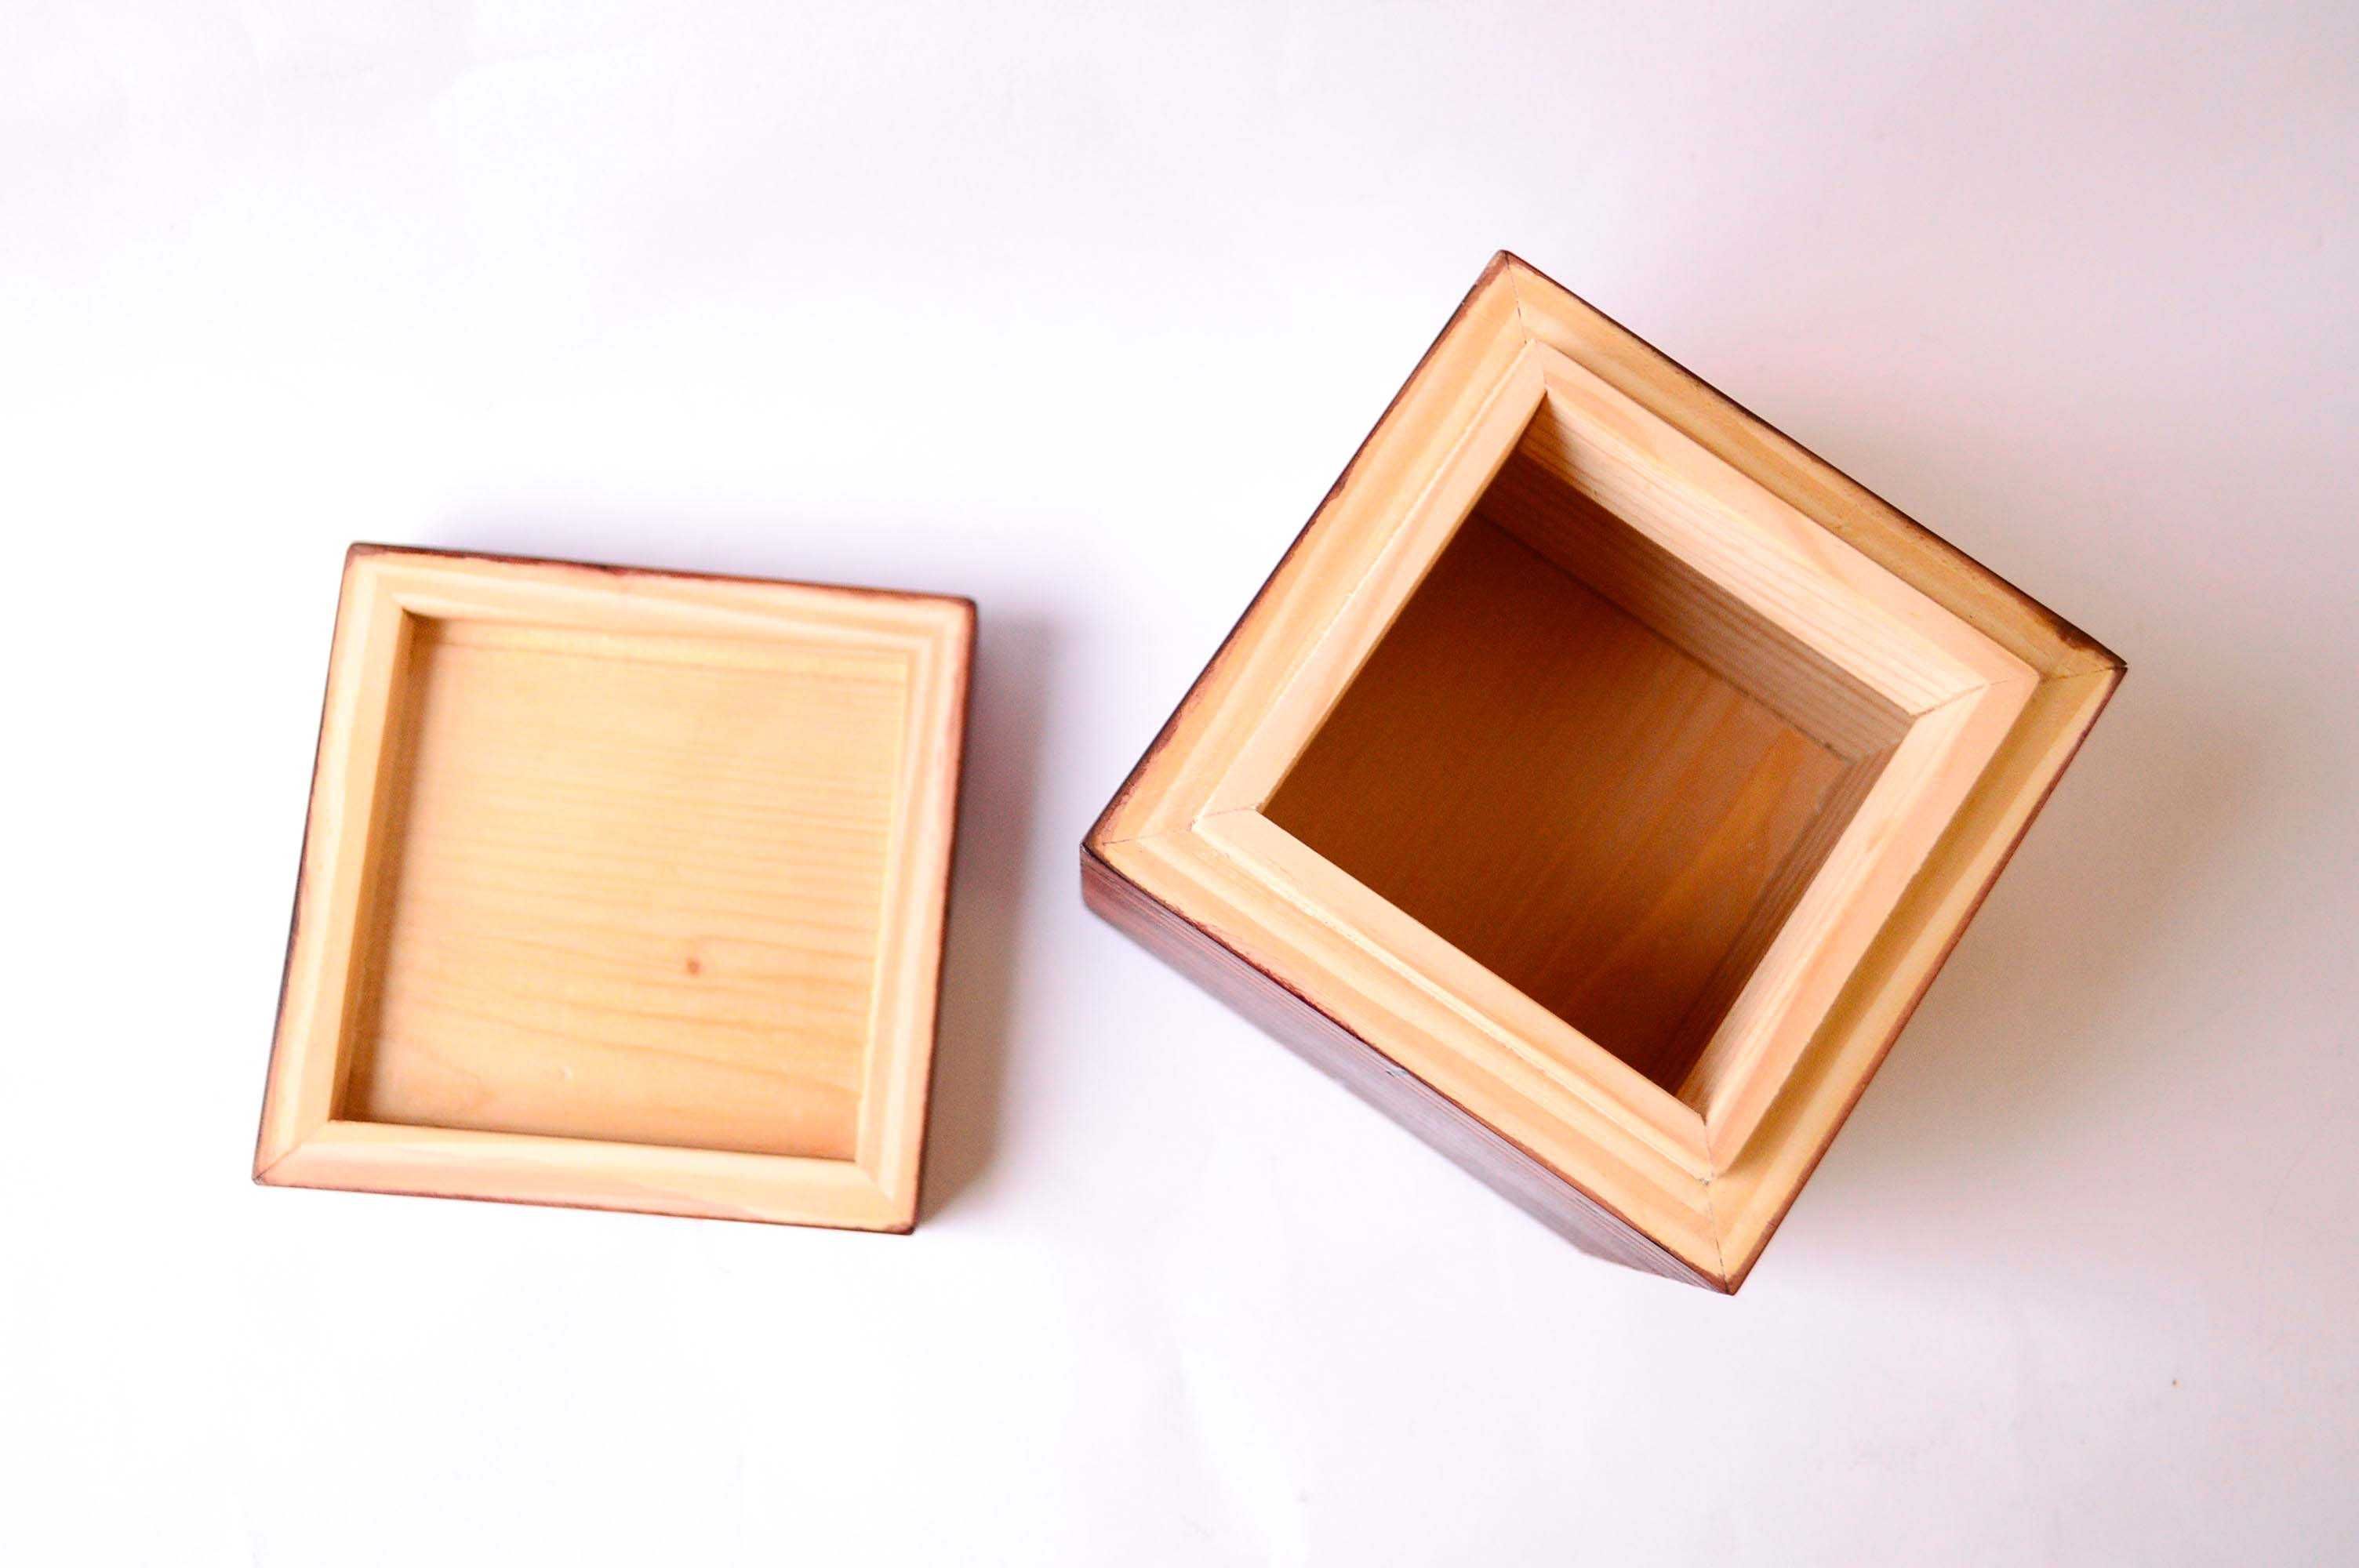 Дървена кутия с капак